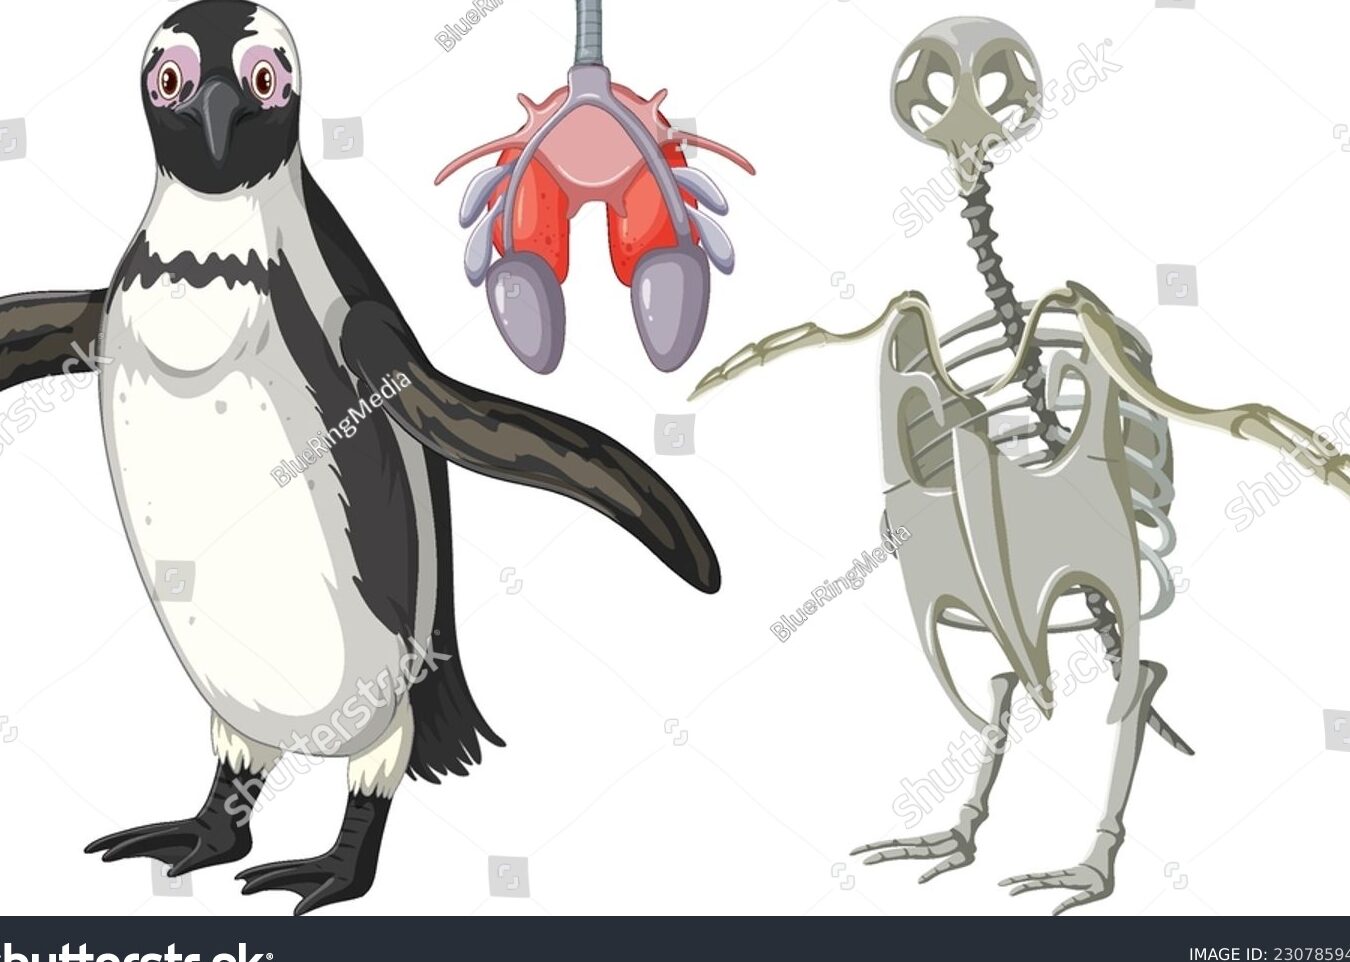 El sistema esquelético de un pingüino: estructura y adaptaciones.